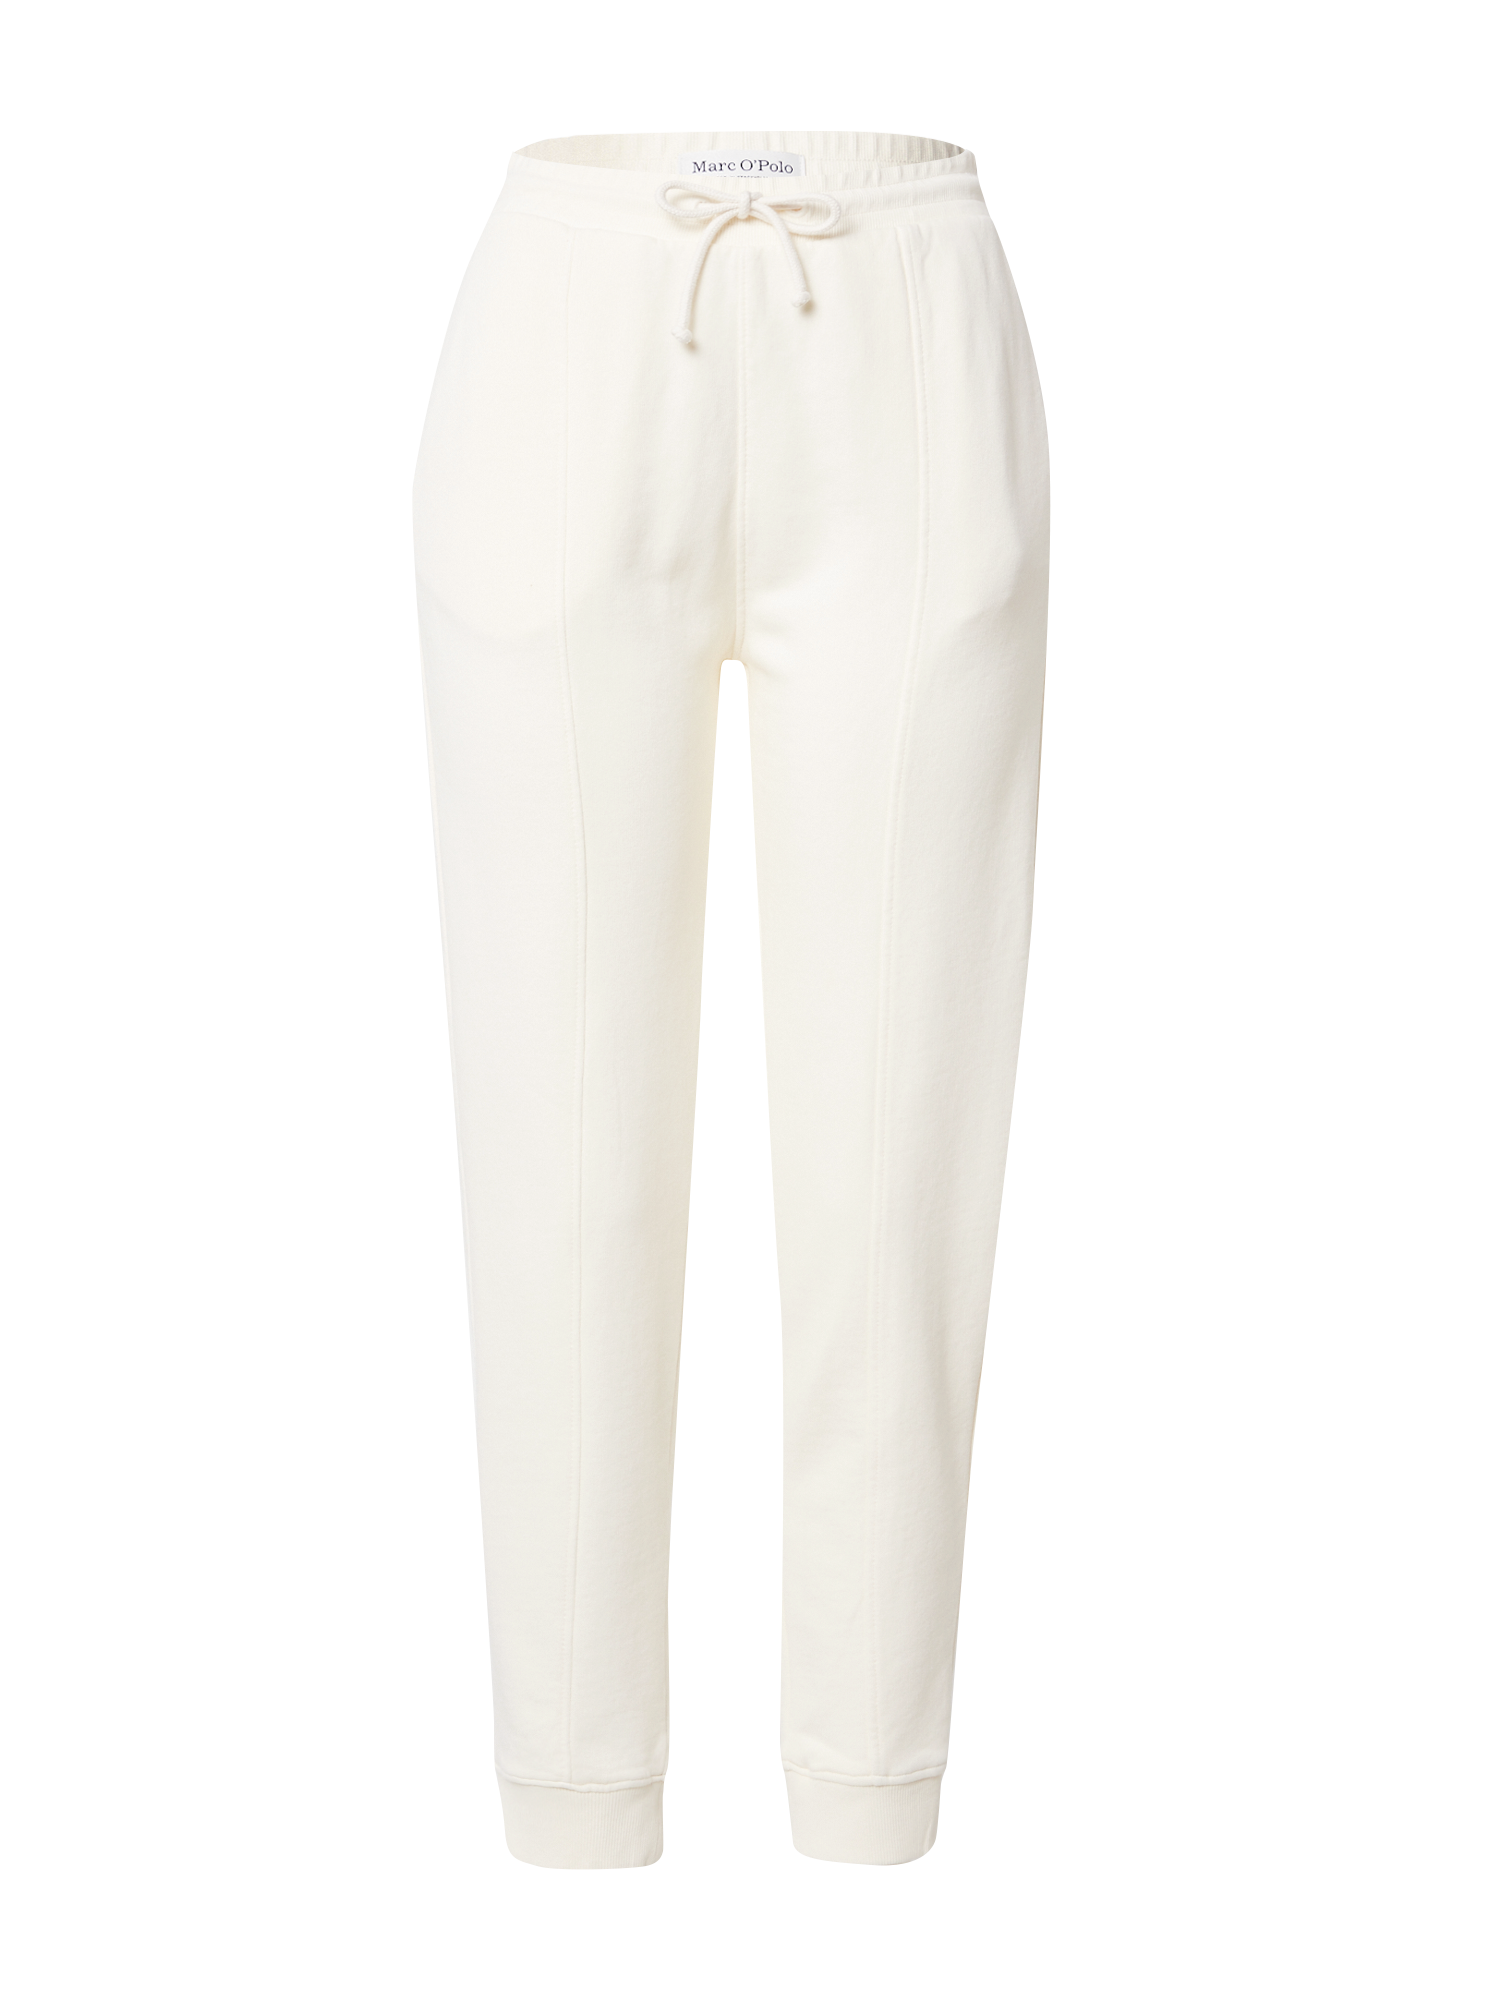 Kobiety Bardziej zrównoważony Marc OPolo Spodnie w kolorze Białym 